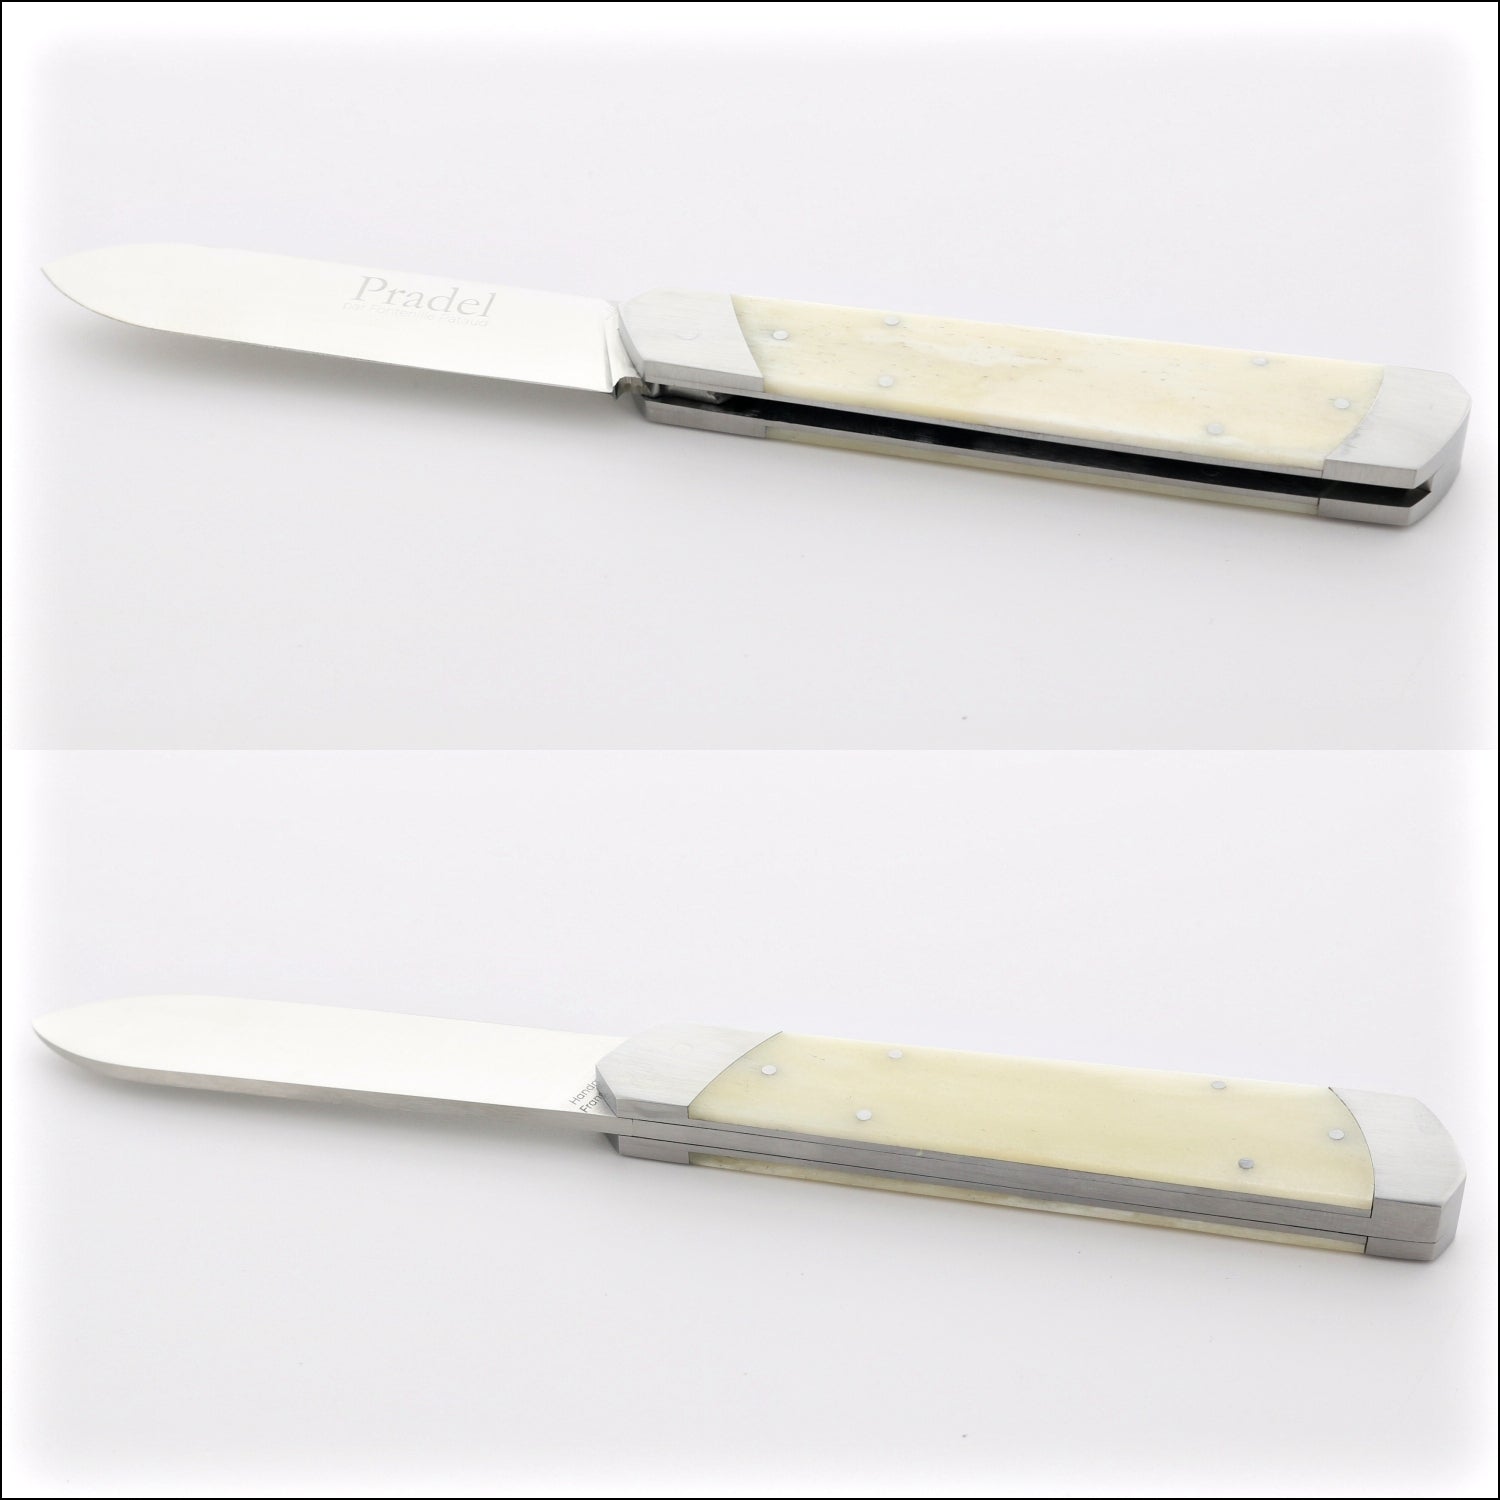 Pradel Folding Knife Cattle Bone Handle & Lock-Back by Fontenille Pataud